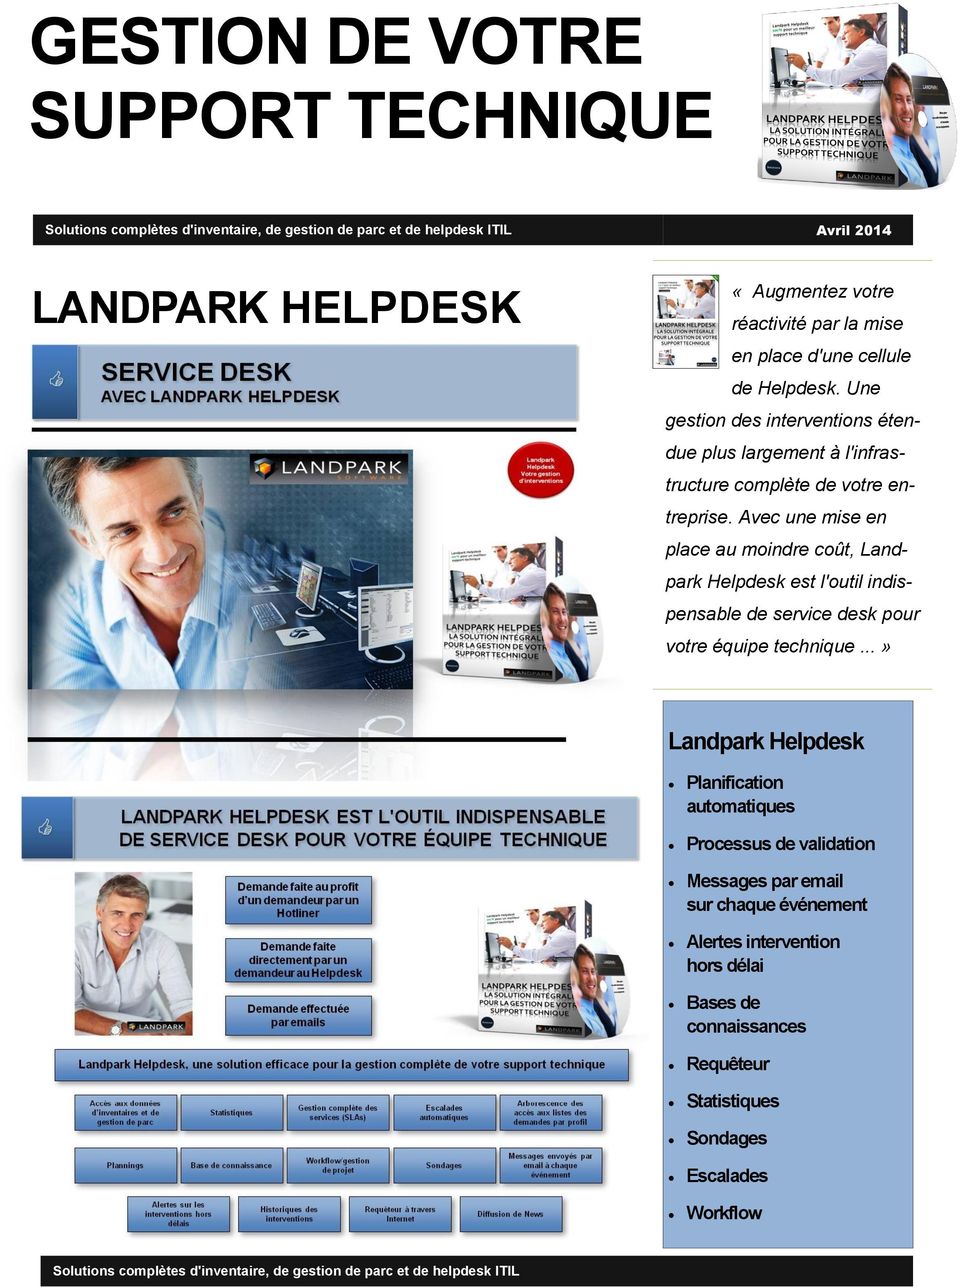 Avec une mise en place au moindre coût, Landpark Helpdesk est l'outil indispensable de service desk pour votre équipe technique.